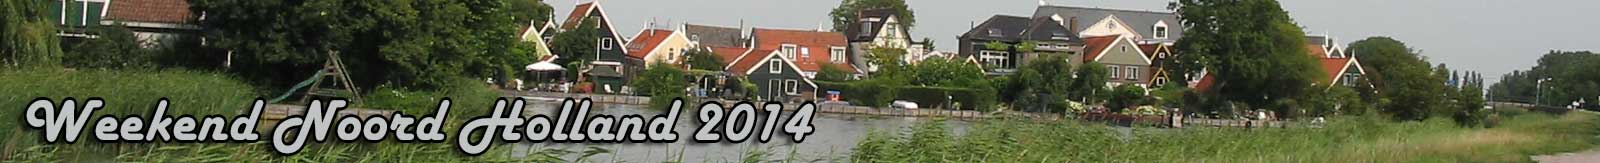 Weekend Noord Holland 2014